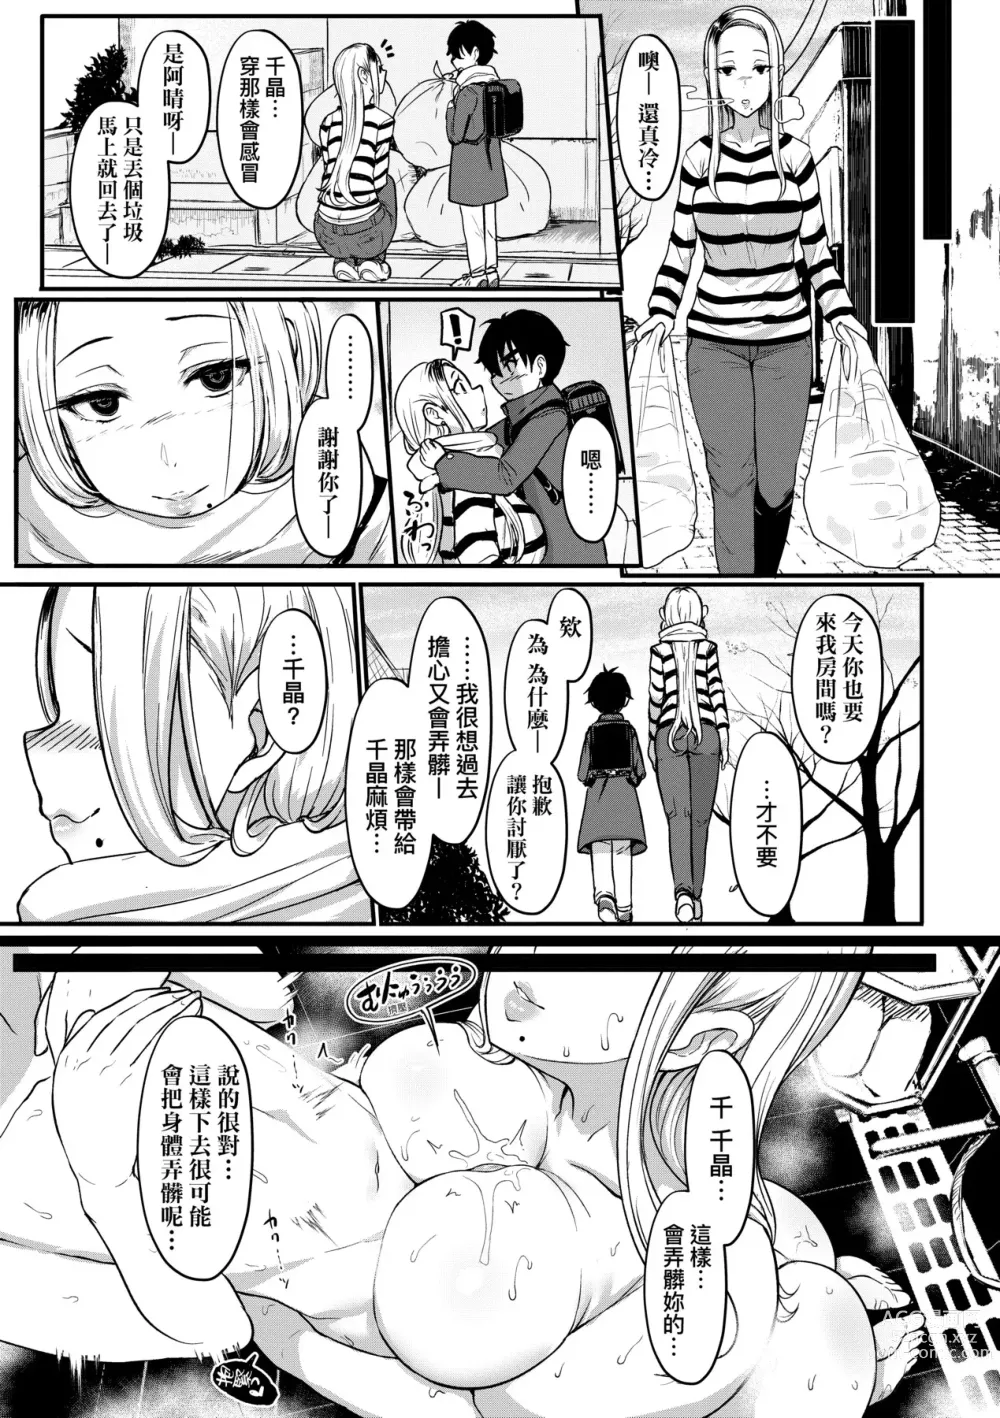 Page 280 of manga いいけど、ナイショね